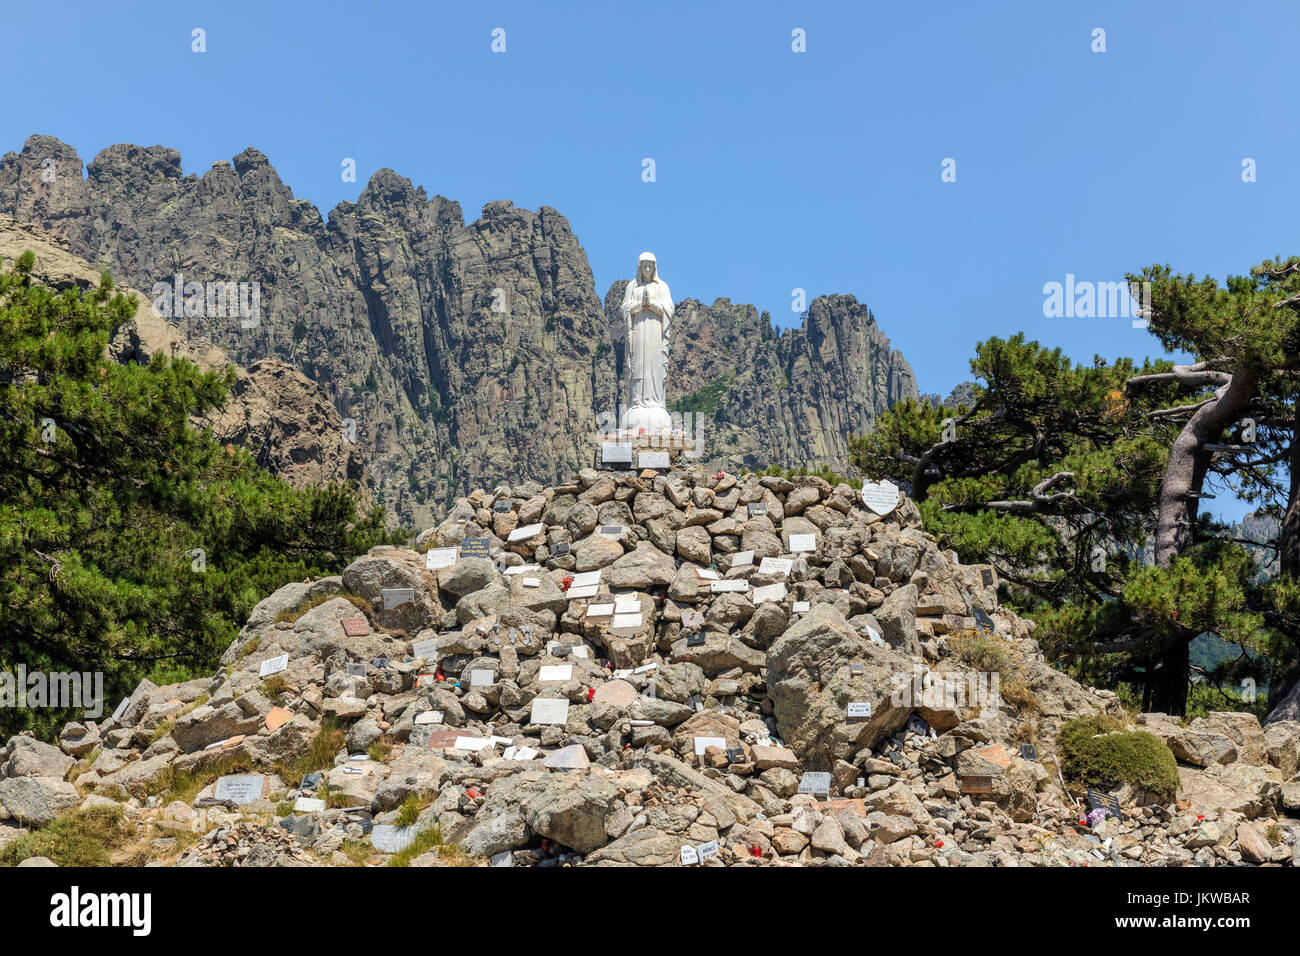 Notre Dame des Neiges, Aiguilles de Bavella, Parc naturel régional de Corse, Corse, France Banque D'Images